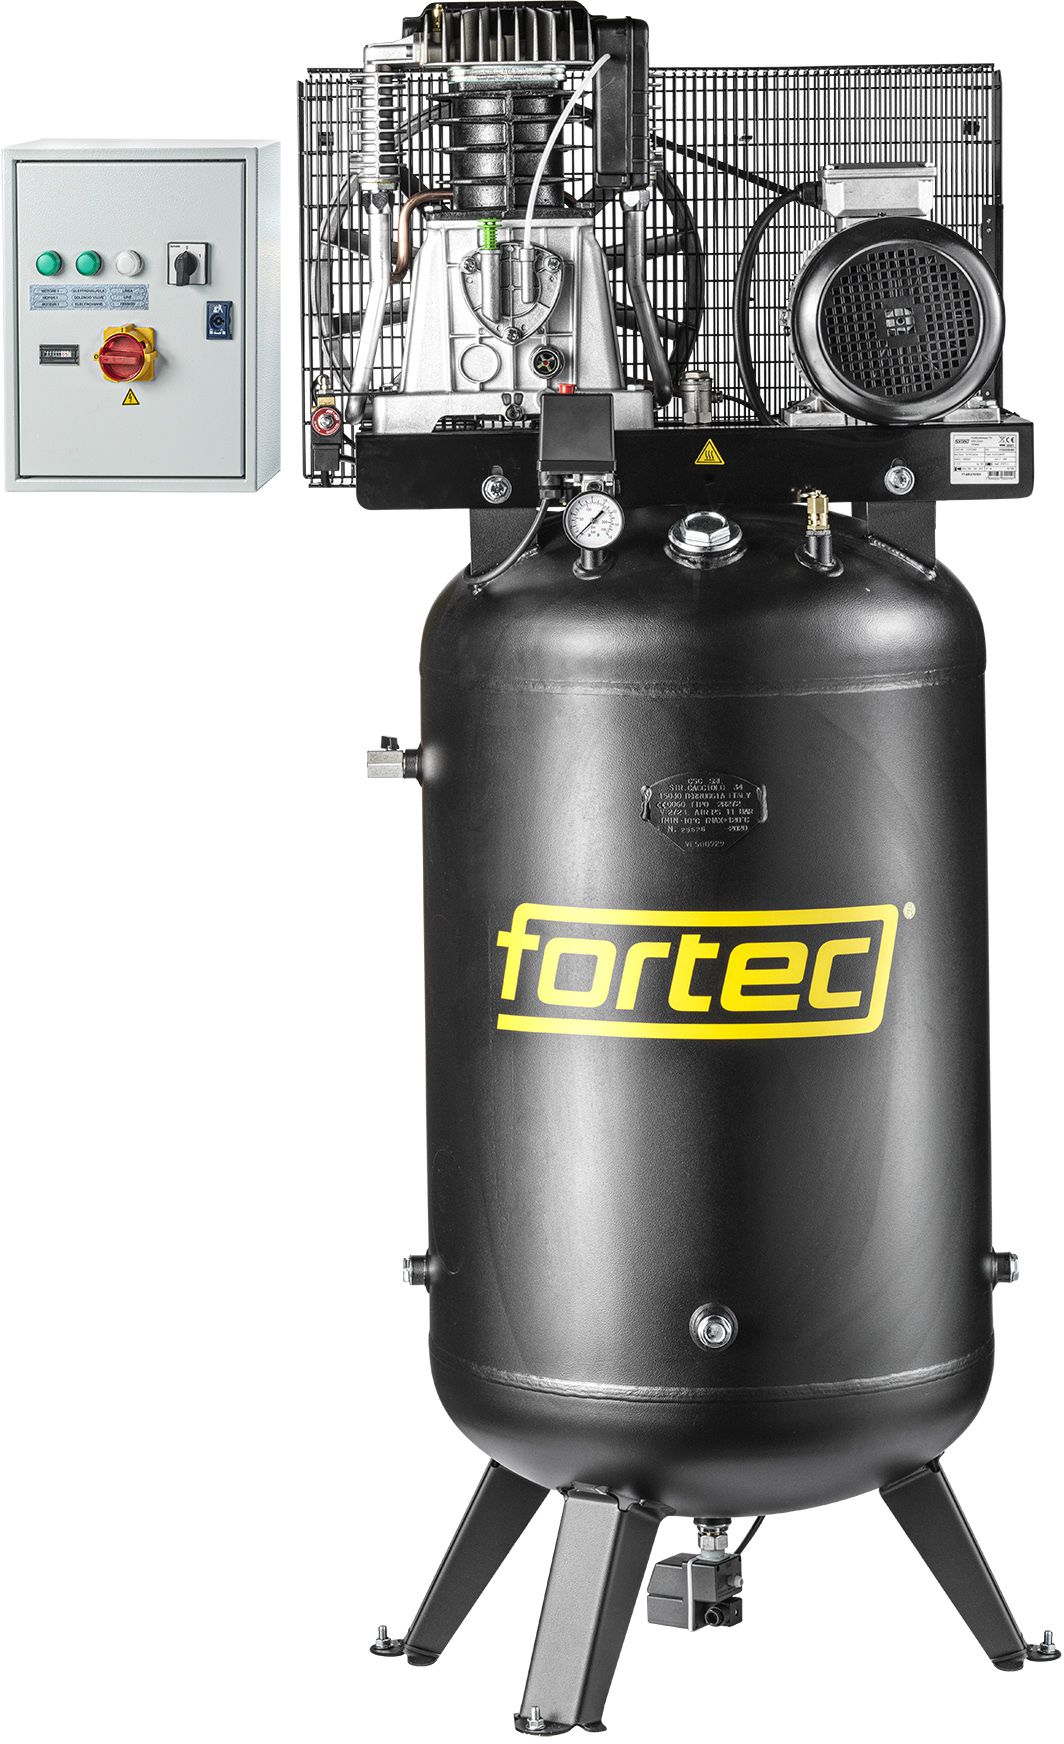 FORTEC Druckluft-Kompressor FT-AIR-270V/830 - Druckluft, Zubehör